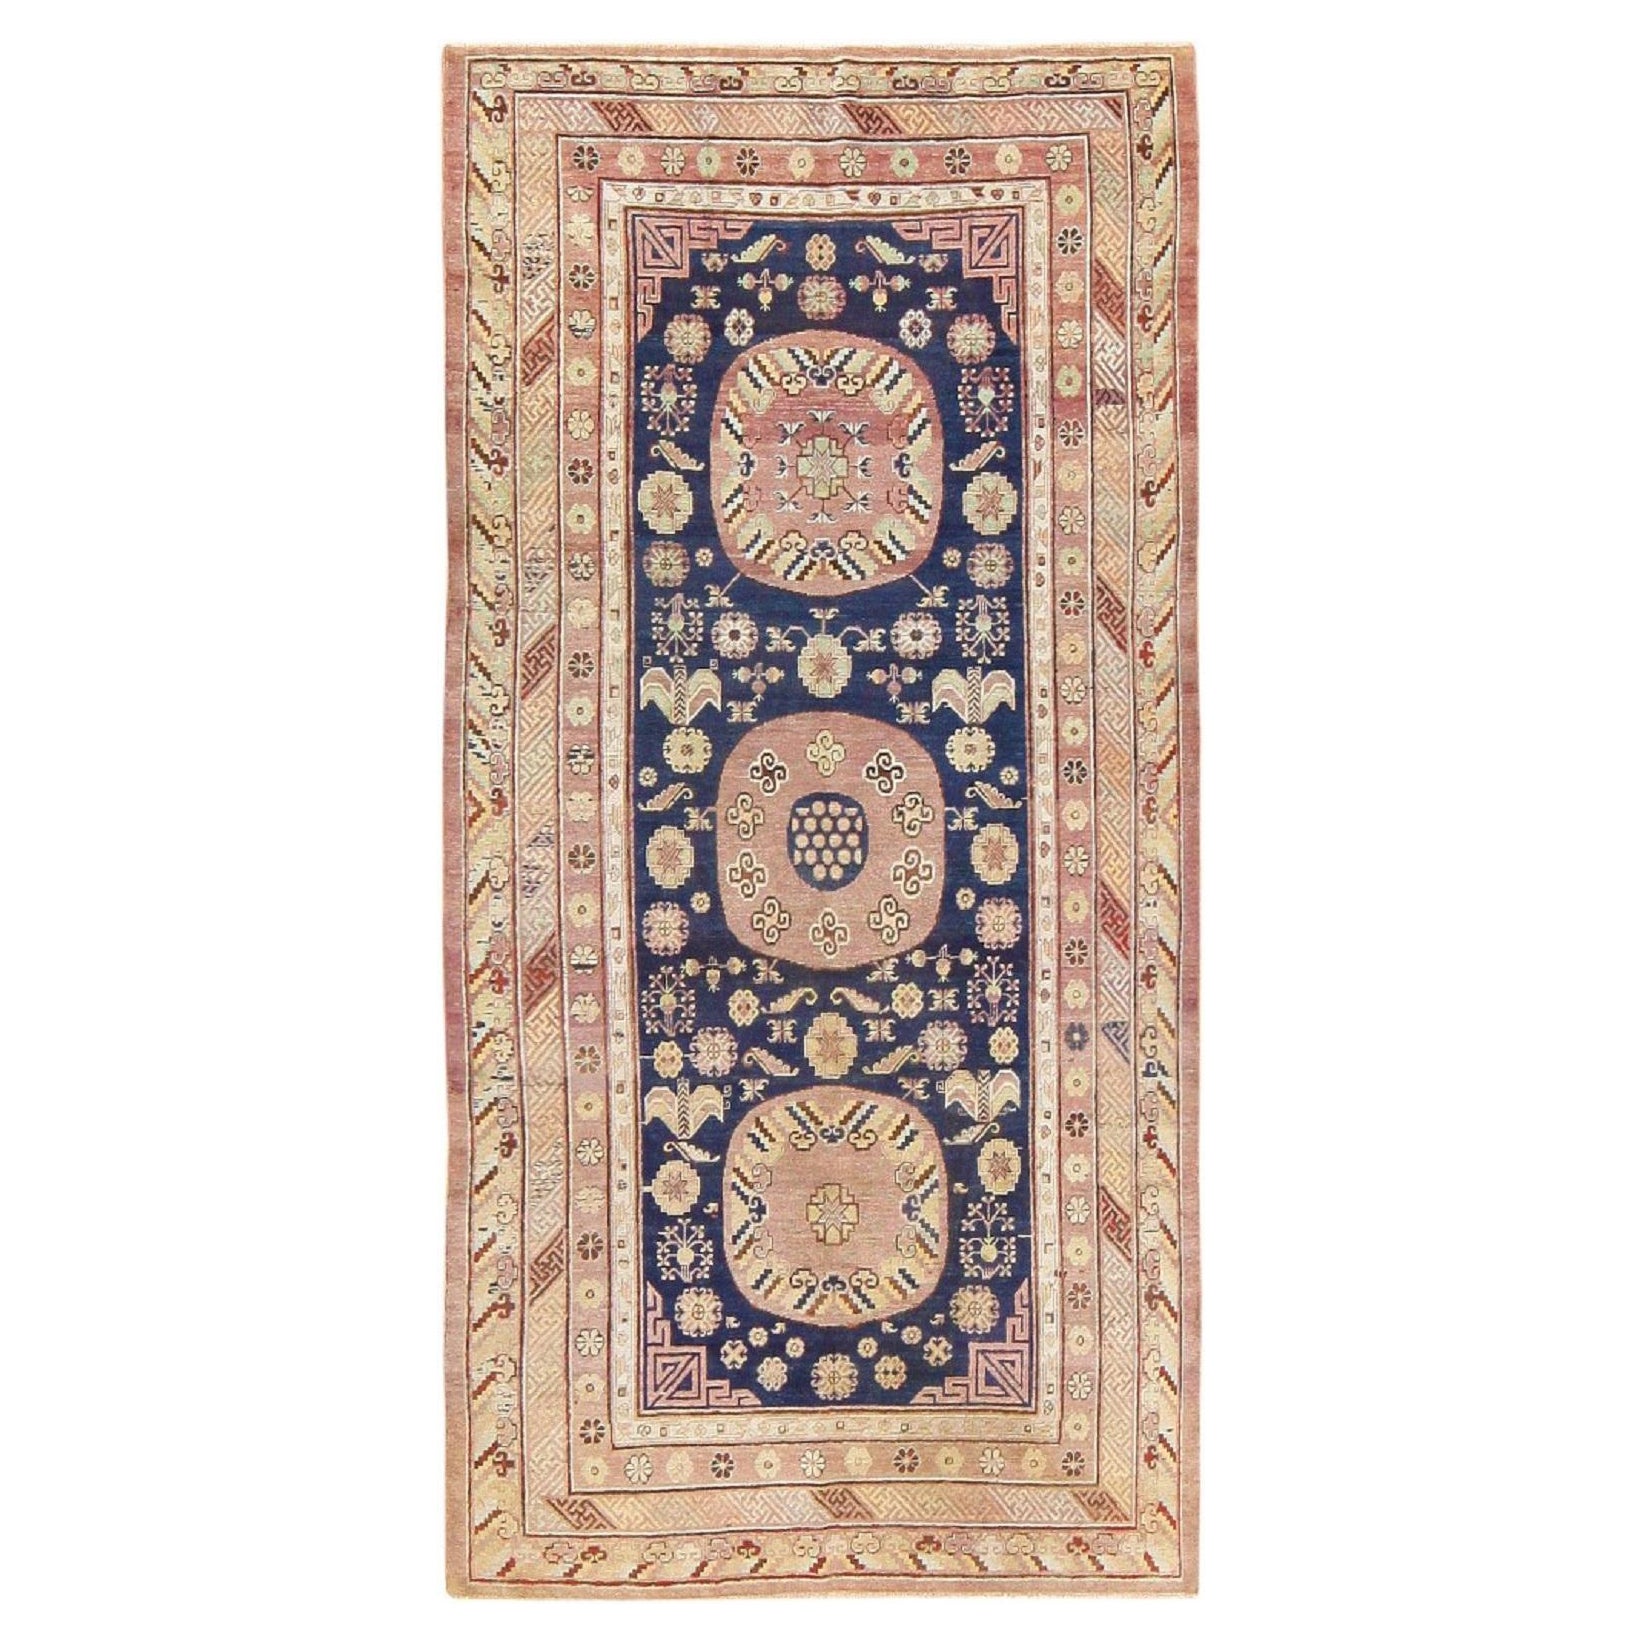 Antique Khotan Carpet from East Turkestan. 5 ft 5 in x 11 ft